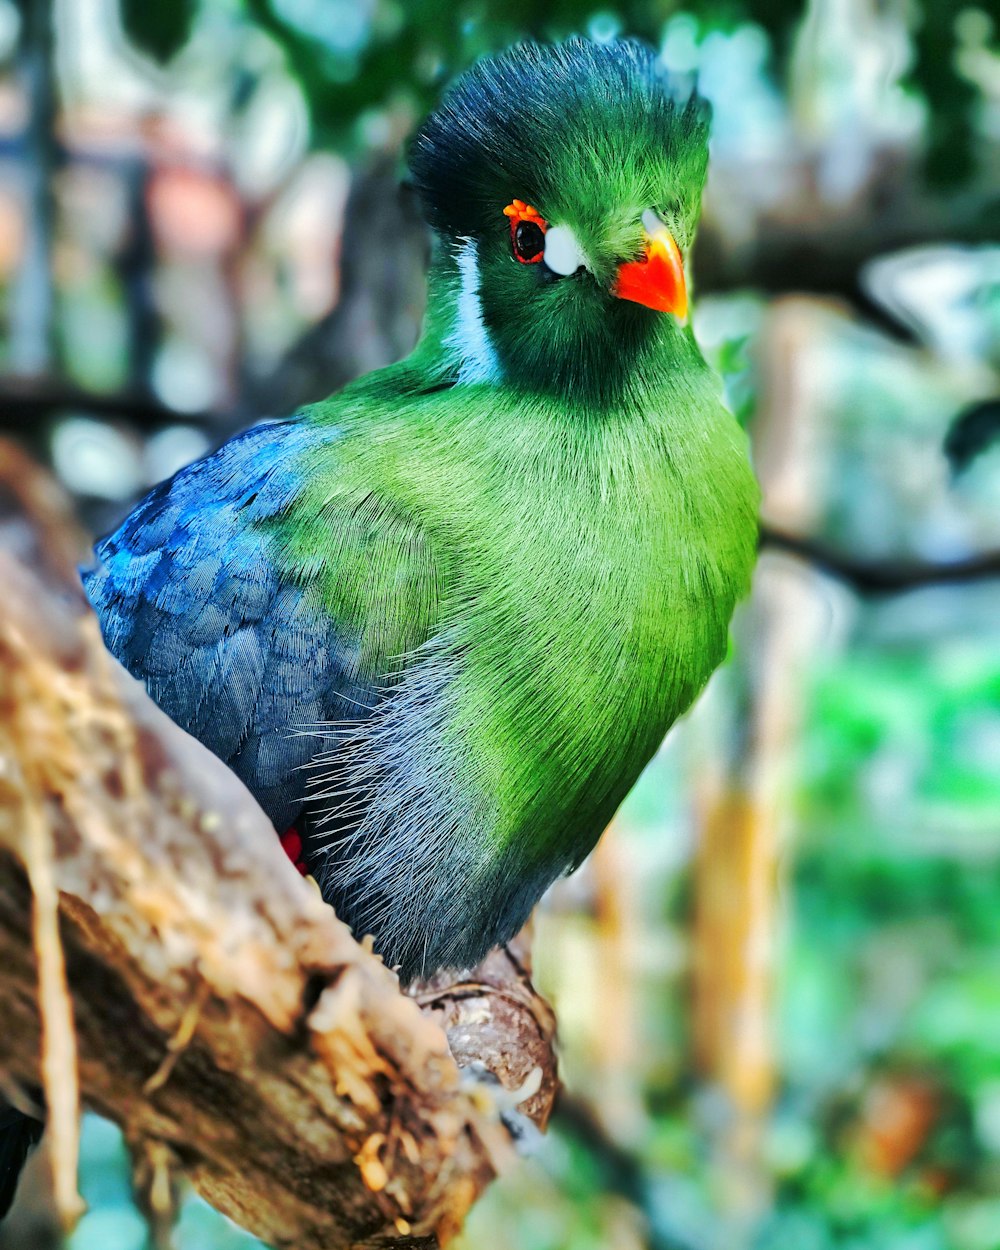 Photographie sélective de mise au point d’un oiseau vert perché sur une branche d’arbre brune